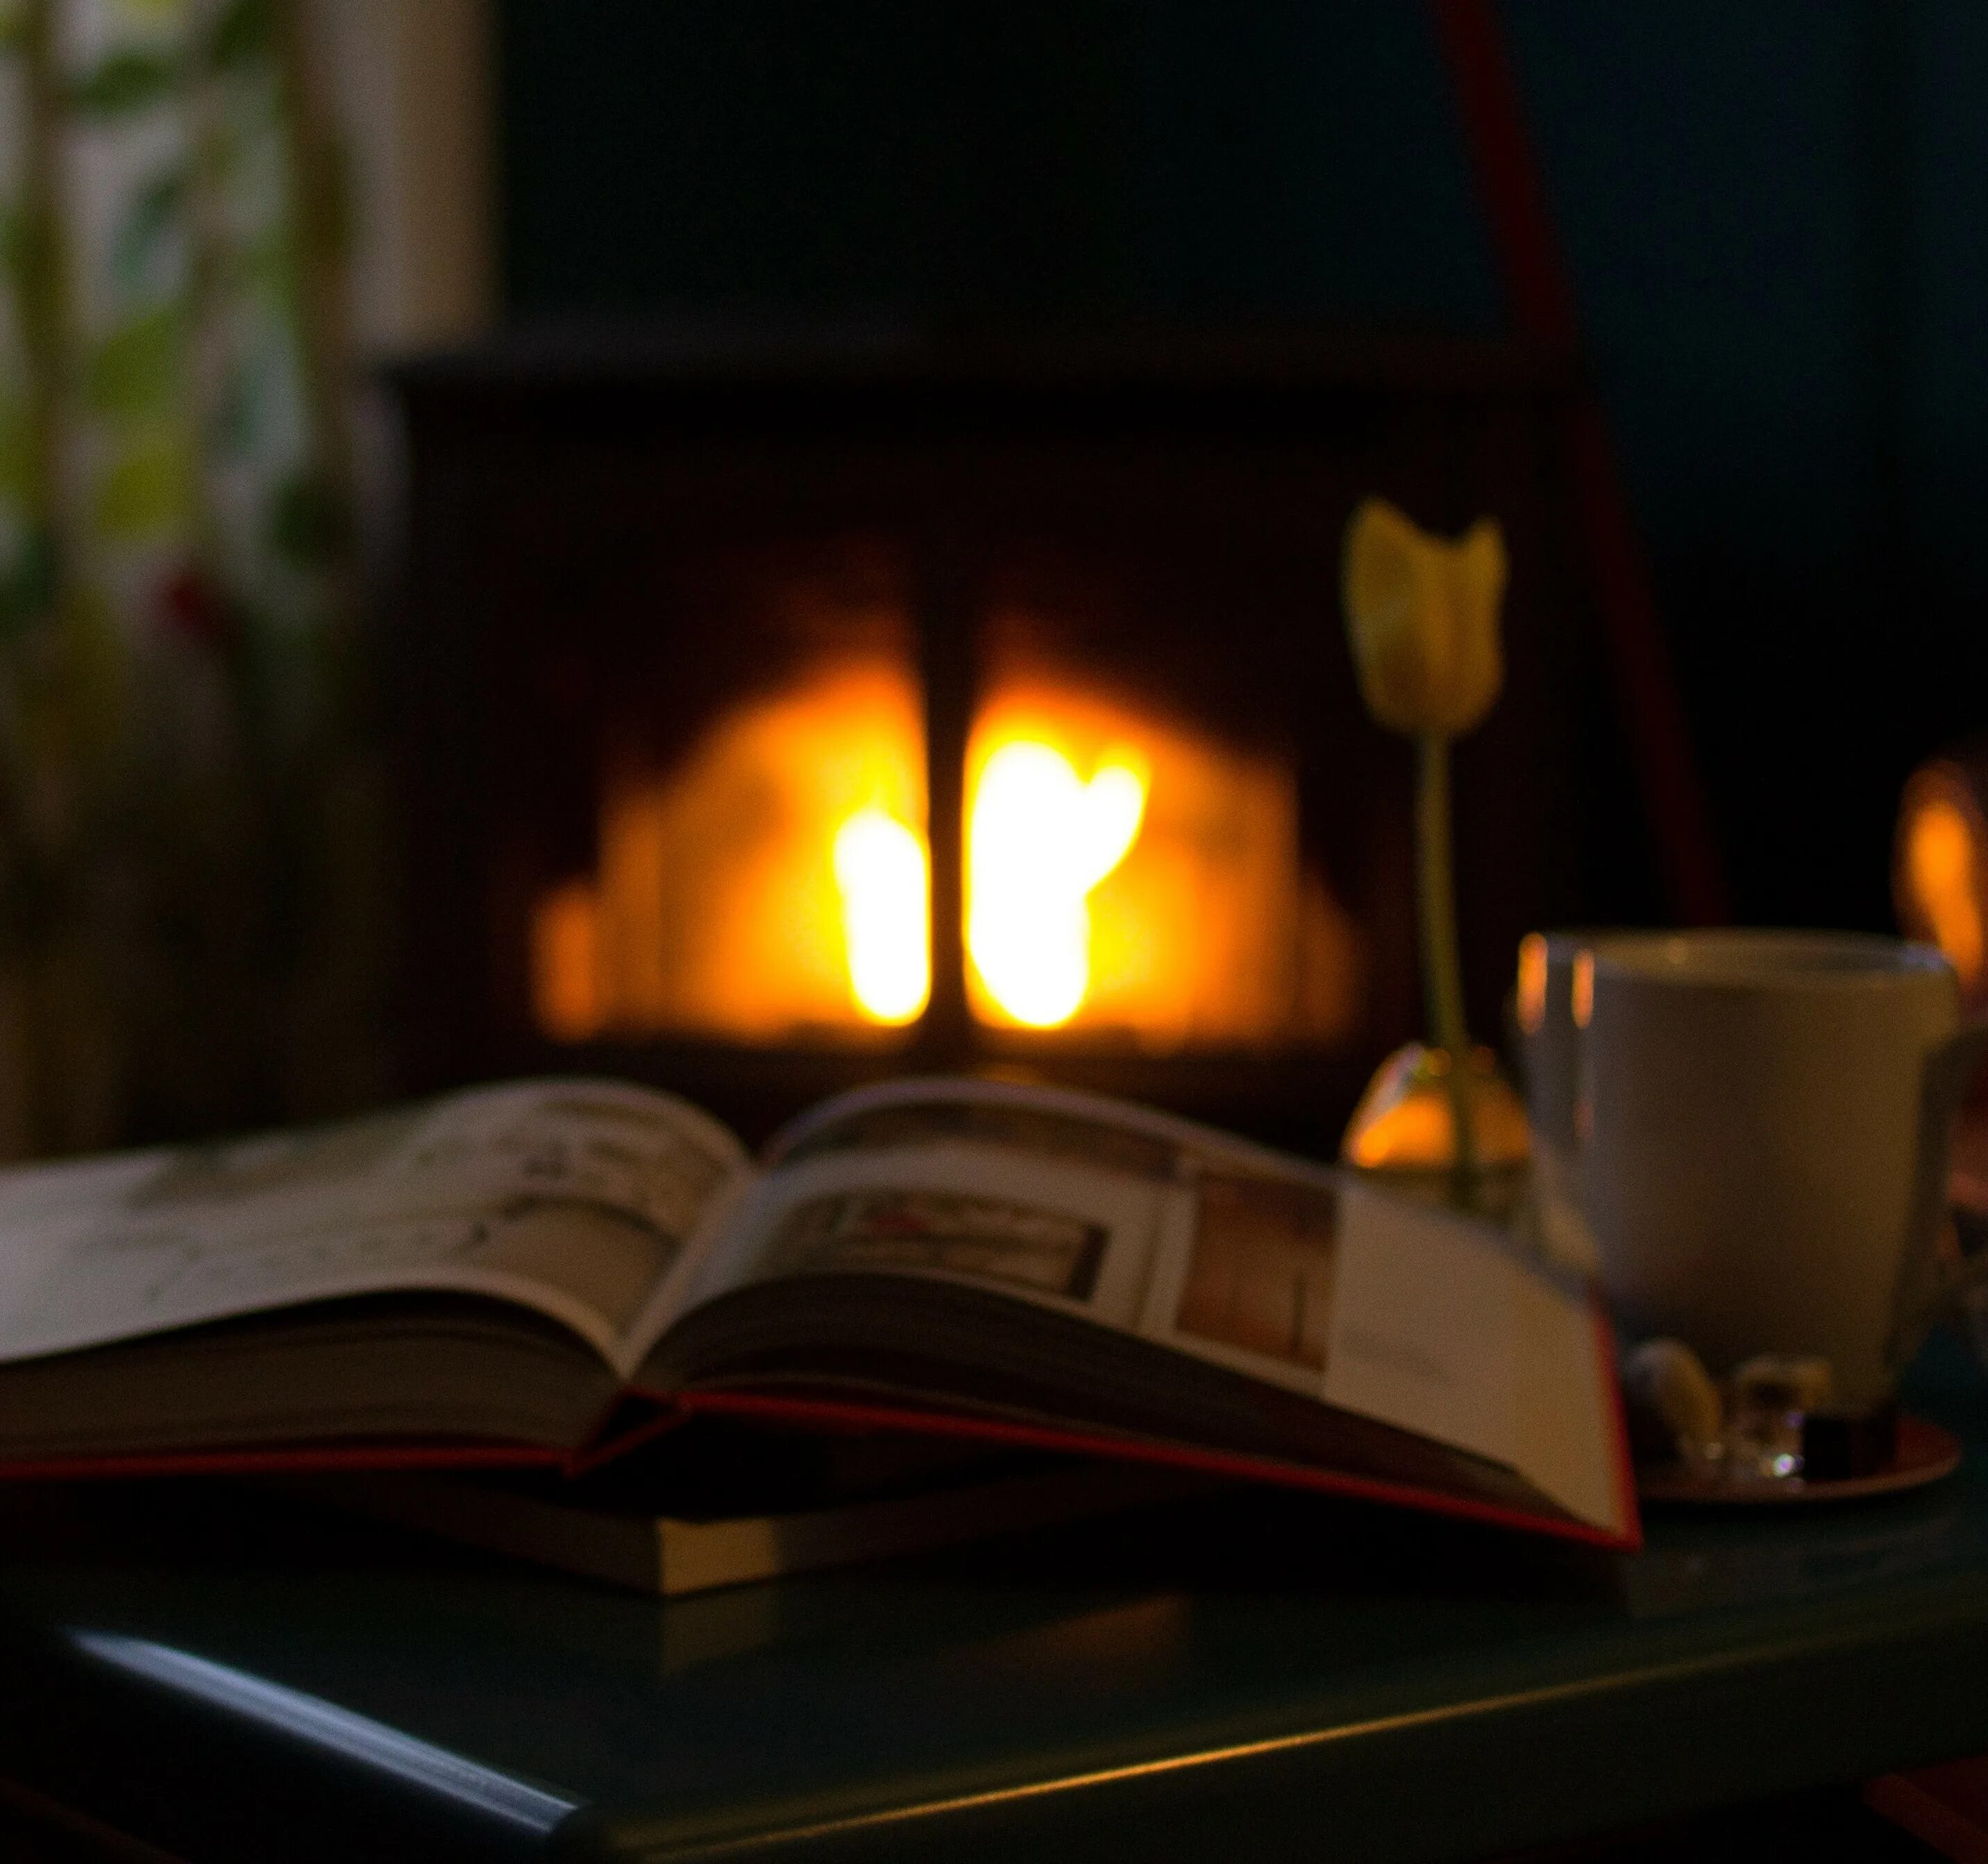 Ляна вечер читать. Камин и книги. С книгой у камина. Уютно у камина с книжкой. Вечер с книжкой.